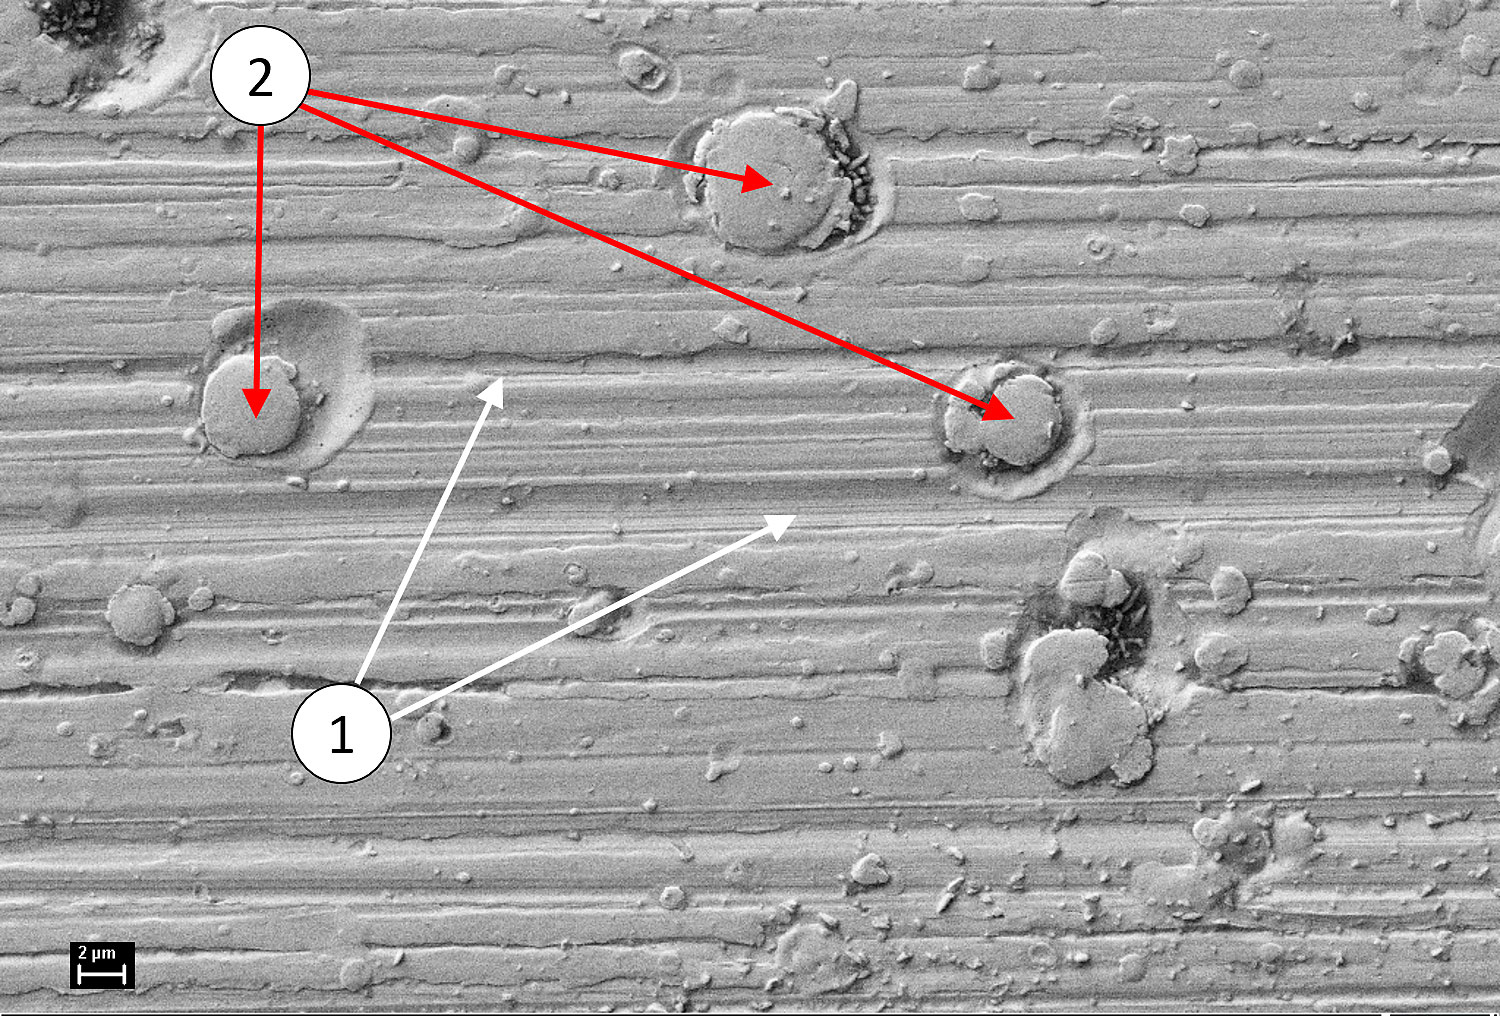 Hình 2: Ảnh SEM của bề mặt mương ổ trục cho thấy các miệng hố vi mô do dòng điện gây hư hỏng đi qua: (1) các vết hoàn thiện bề mặt, (2) các miệng hố vi mô.